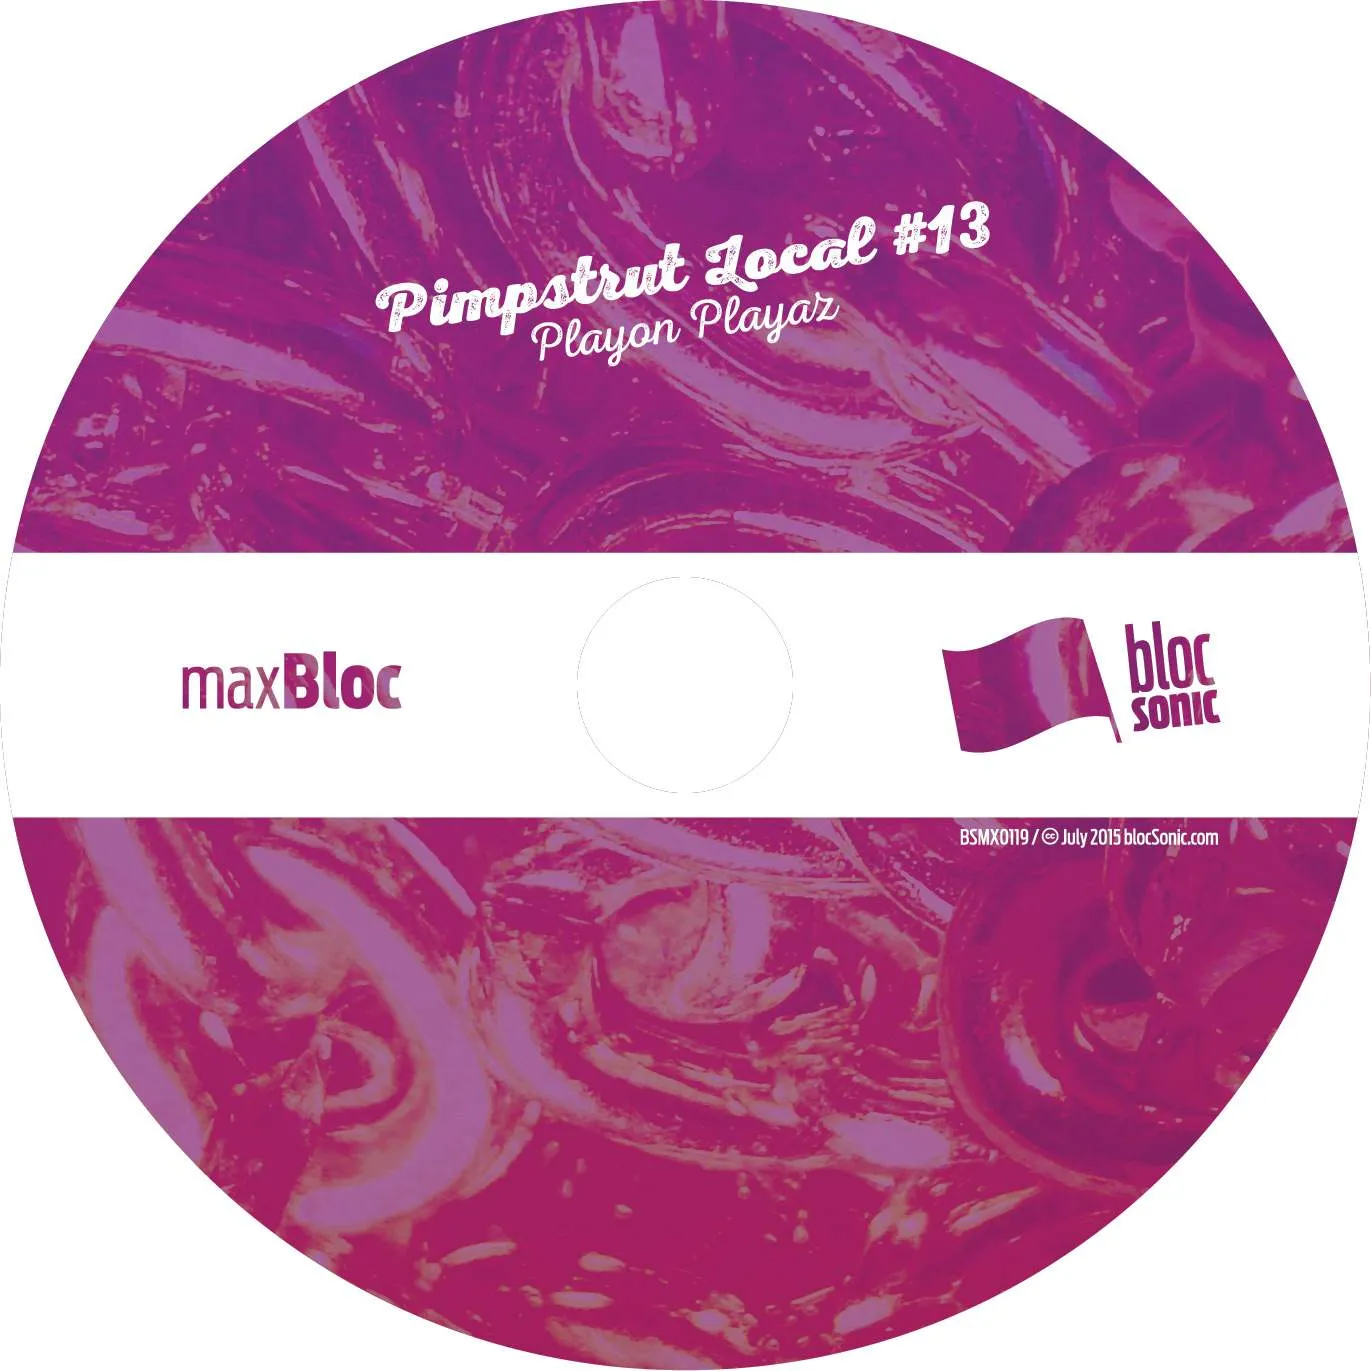 Album disc for “Playon Playaz” by Pimpstrut Local #13